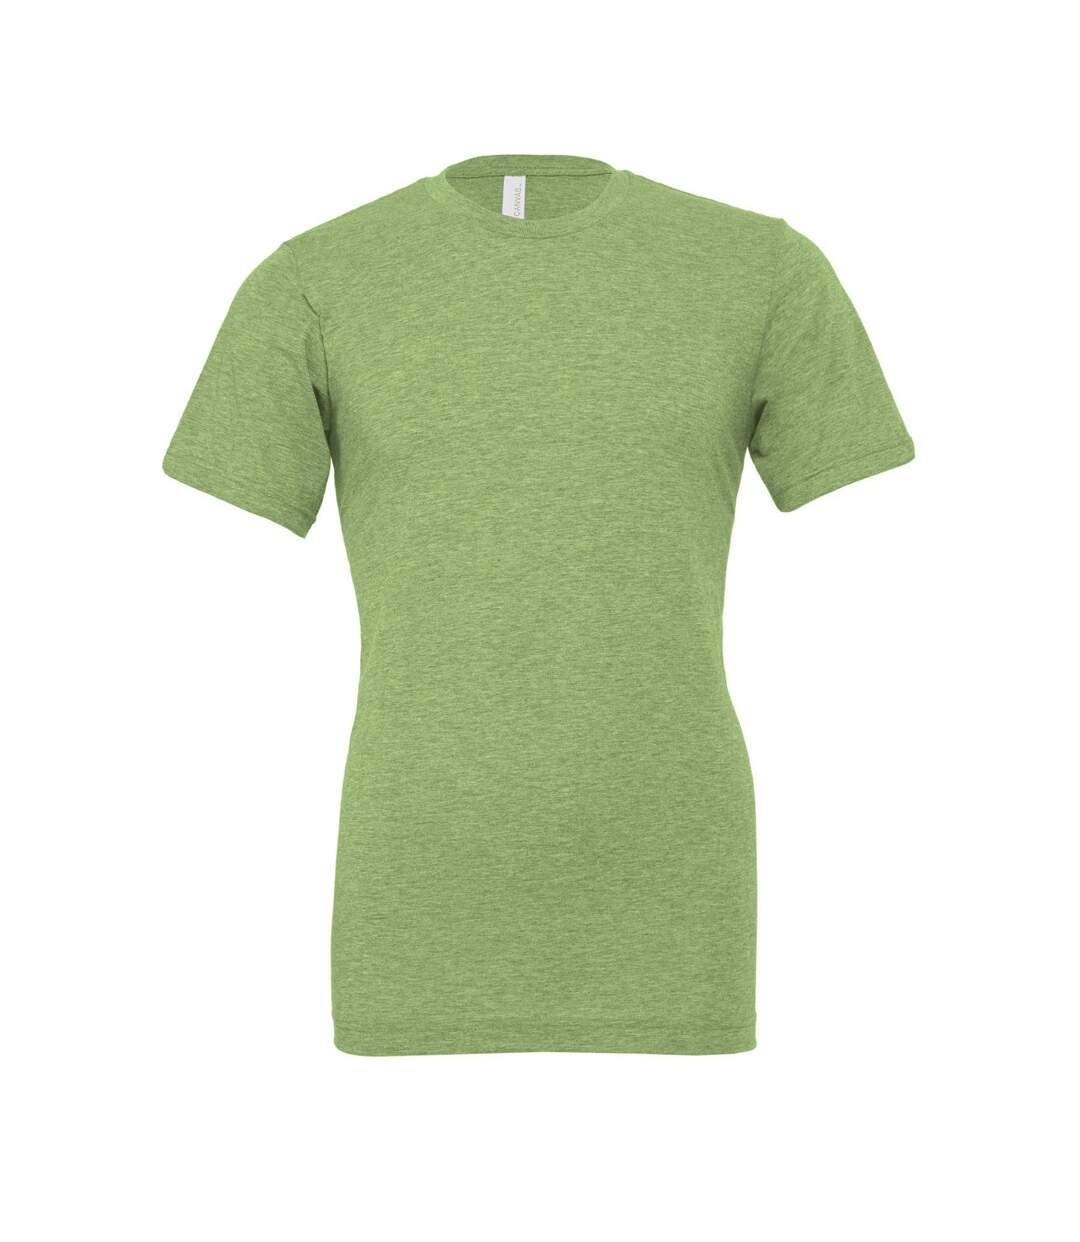 Bella + Canvas - T-shirt - Adulte (Vert chiné) - UTPC3390